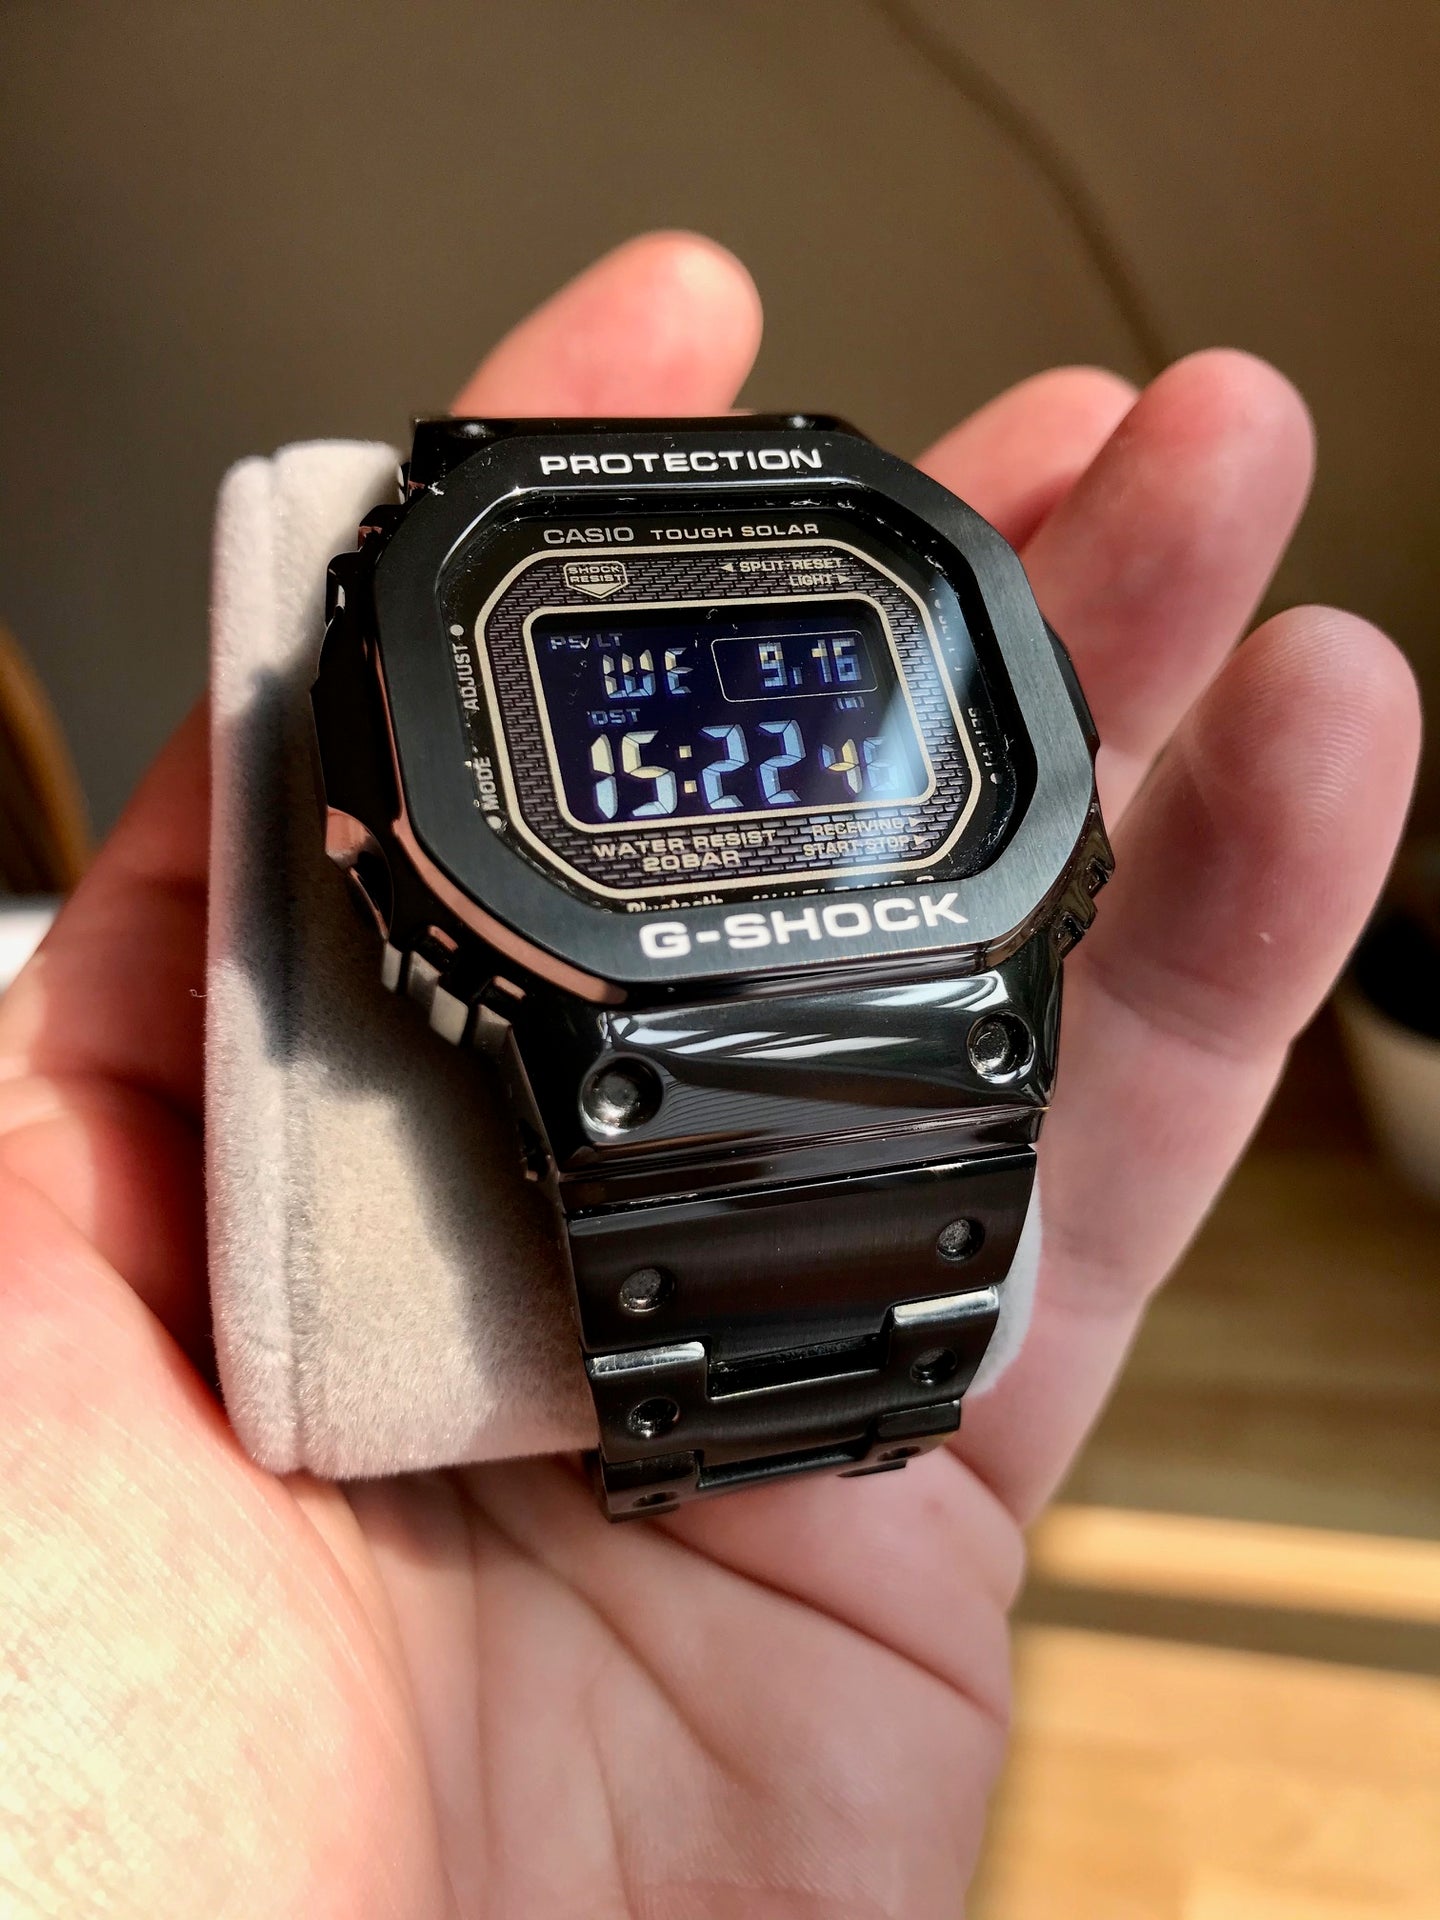 FS: Casio G-Shock GMW-B5000GD-1 with DLC coated bezel and bracelet